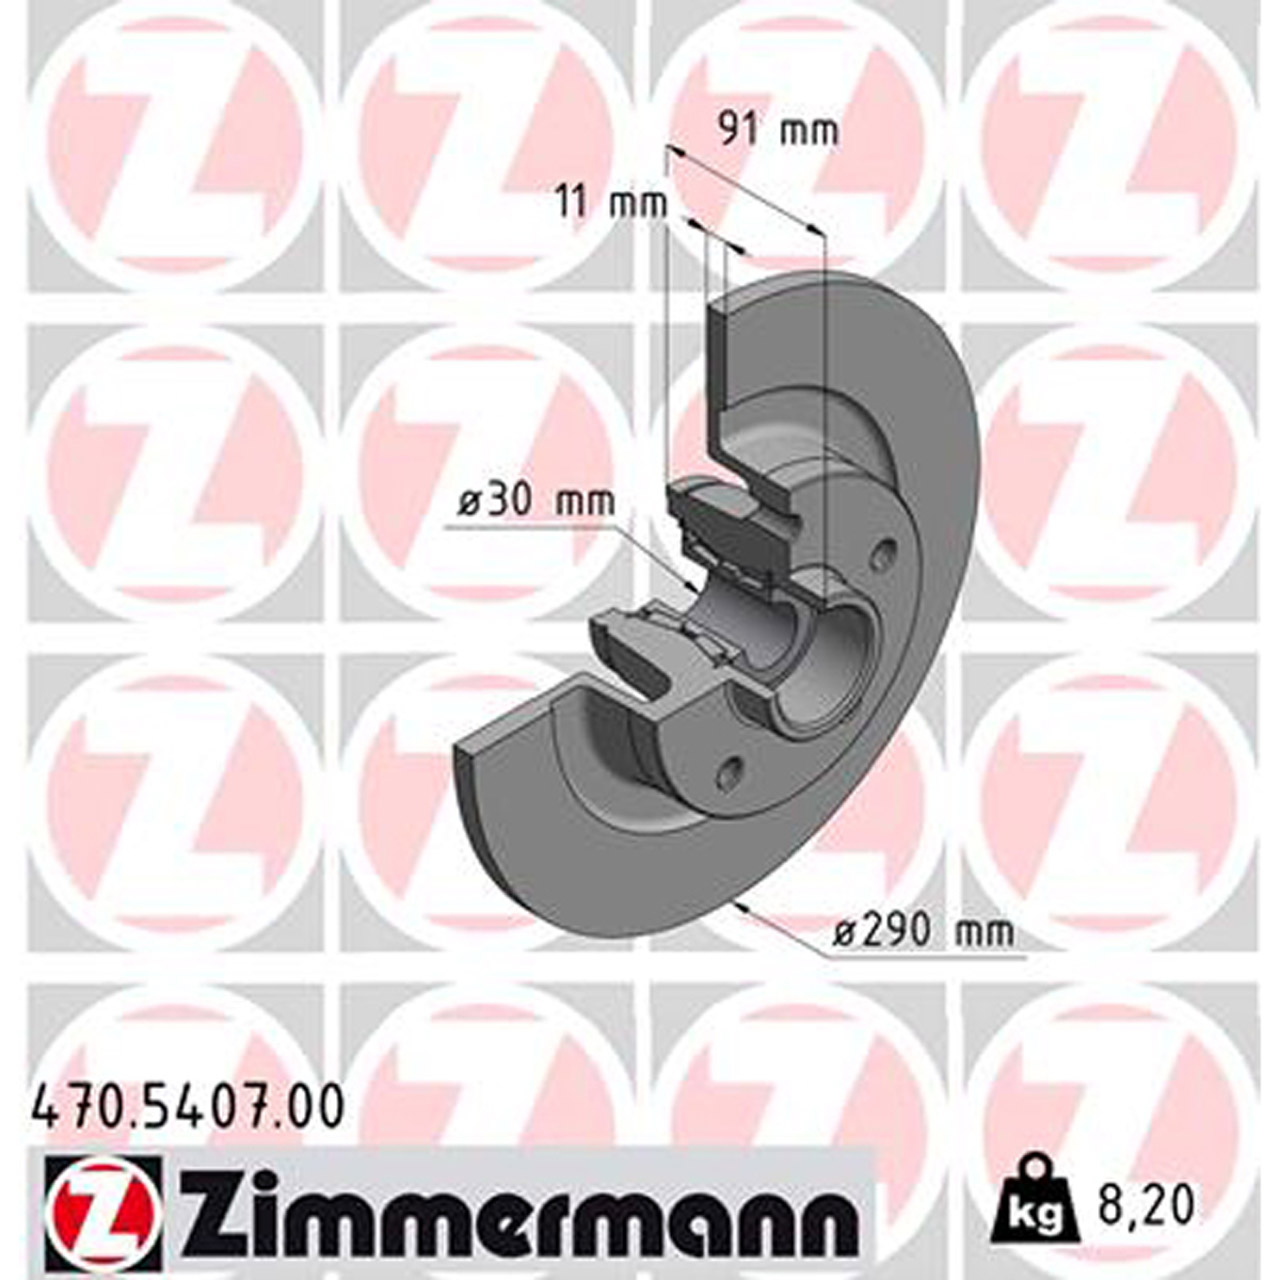 ZIMMERMANN Bremsscheiben + Radlager Satz RENAULT Espace V 1.6/1.8 TCe 1.6 dCi hinten